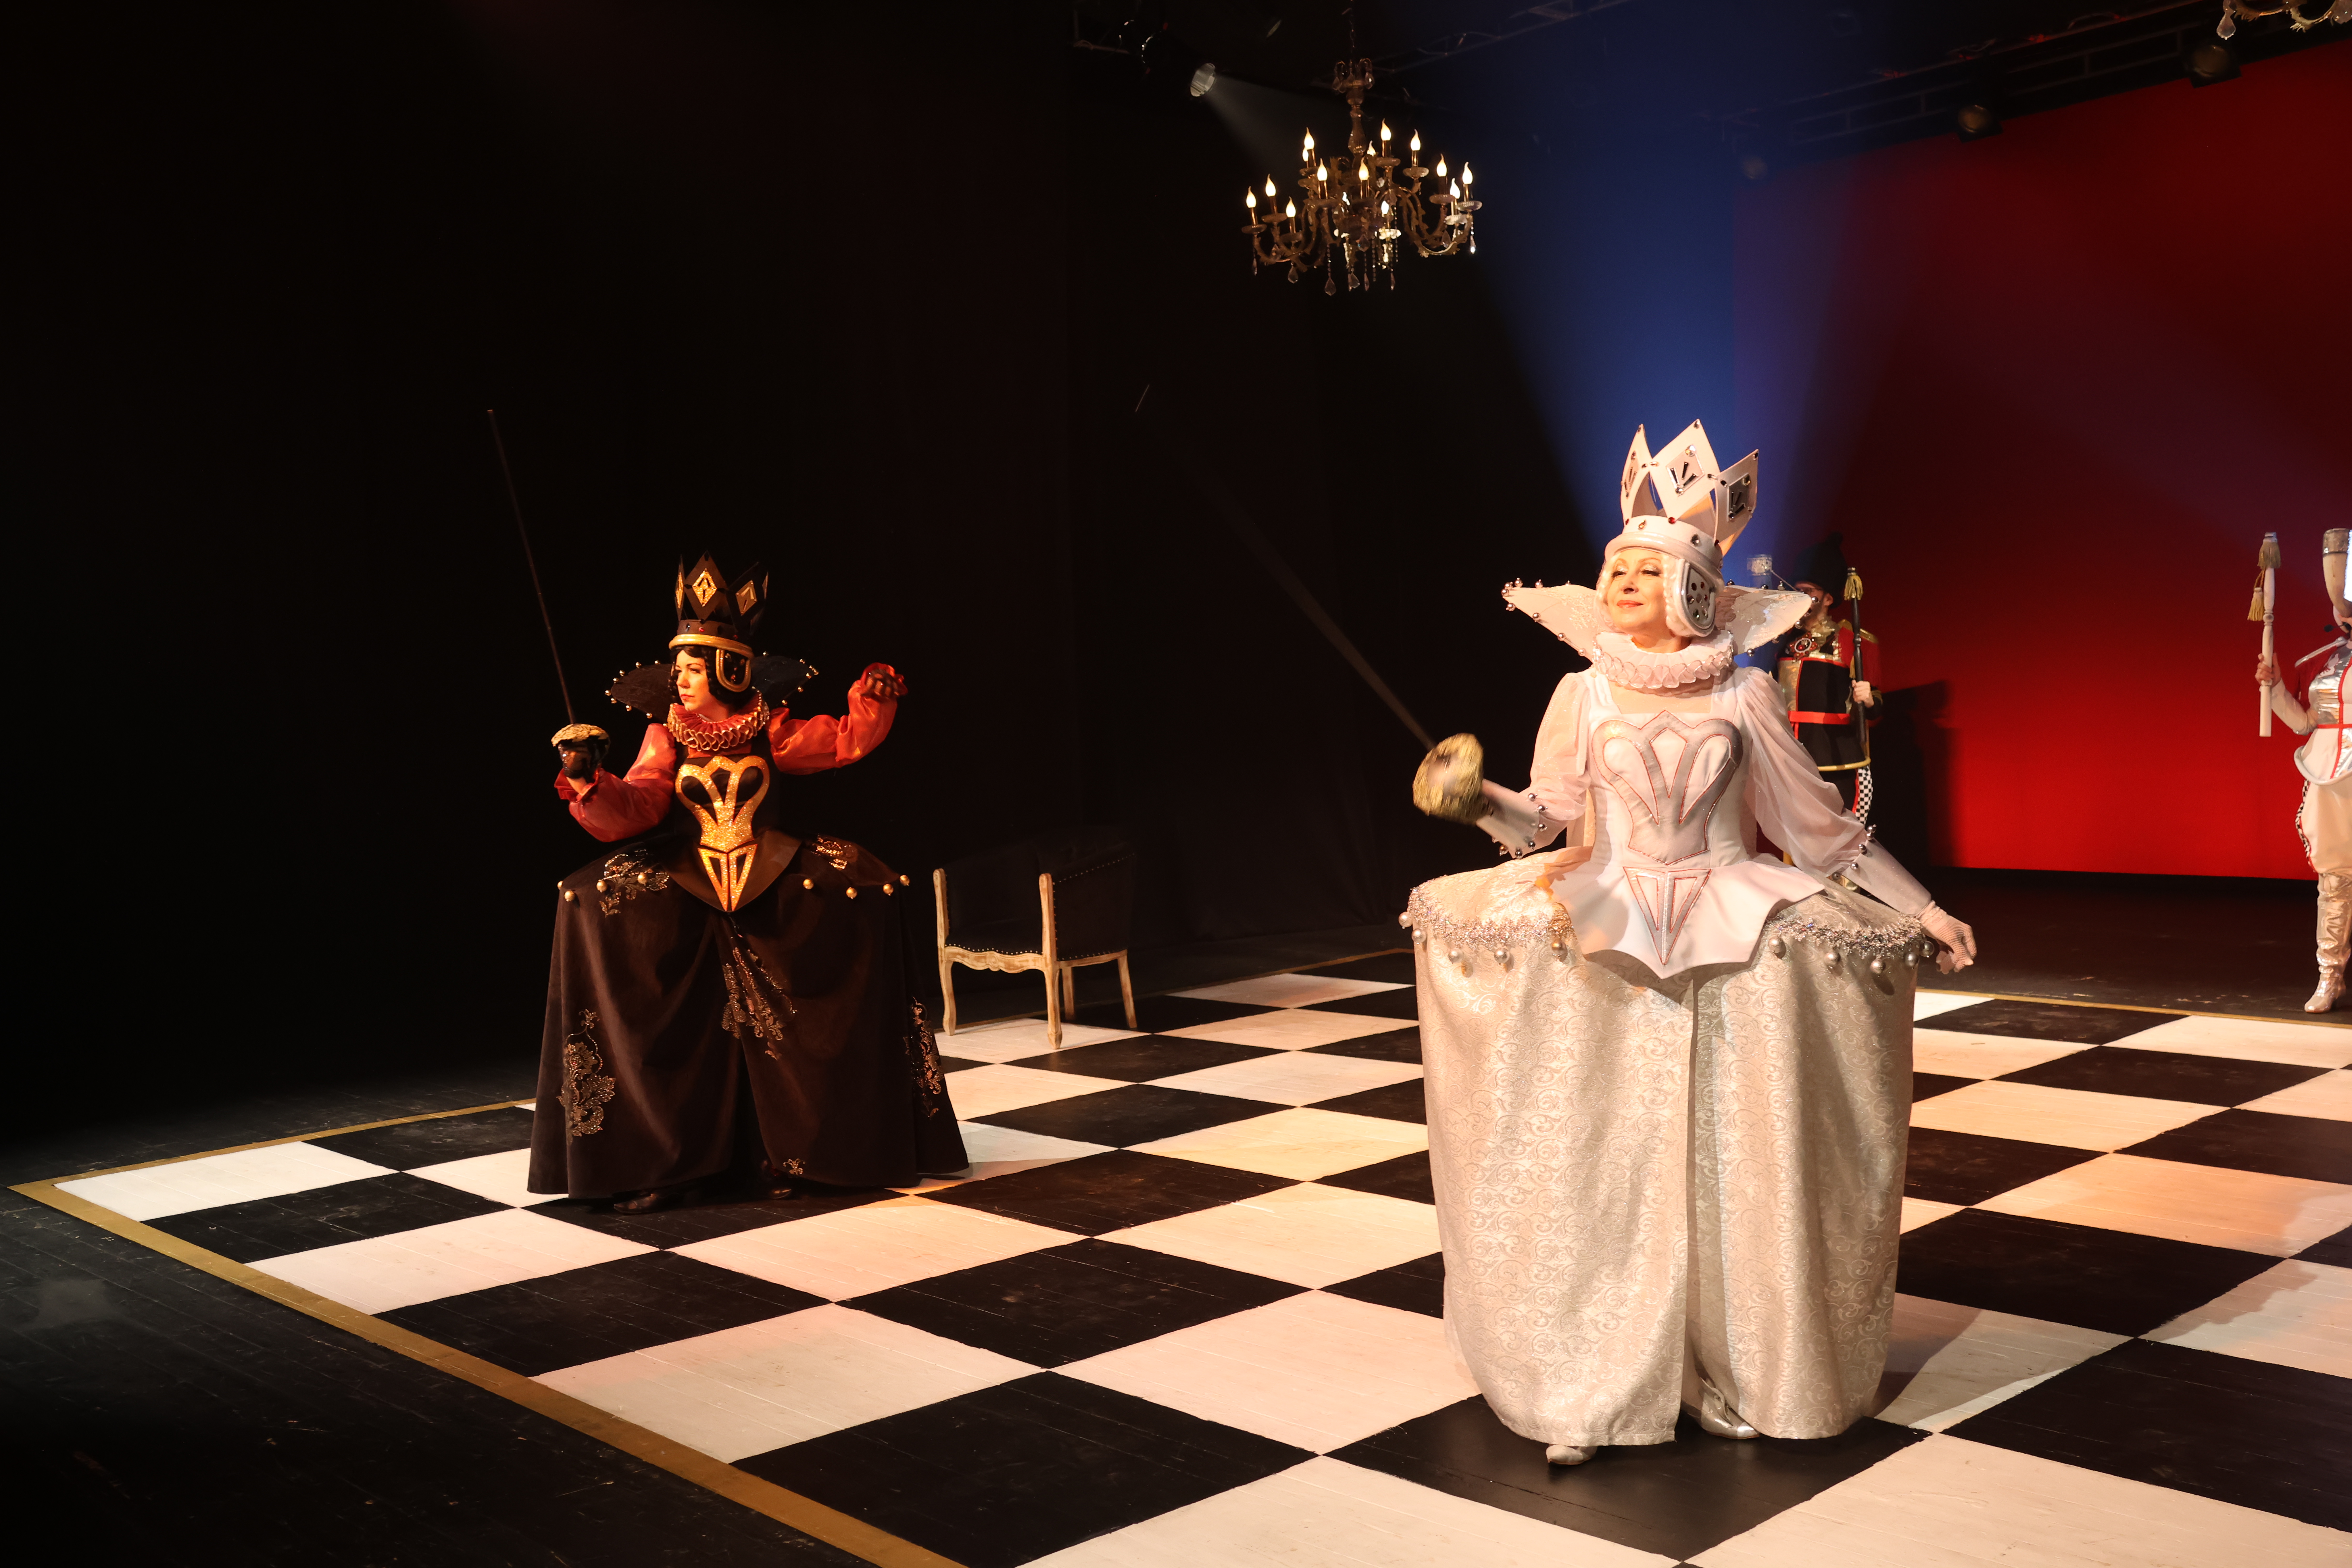 Семейная ёлка Молодёжного театра «Новый год в Шахматном королевстве» или «Тайна Белого Короля». 